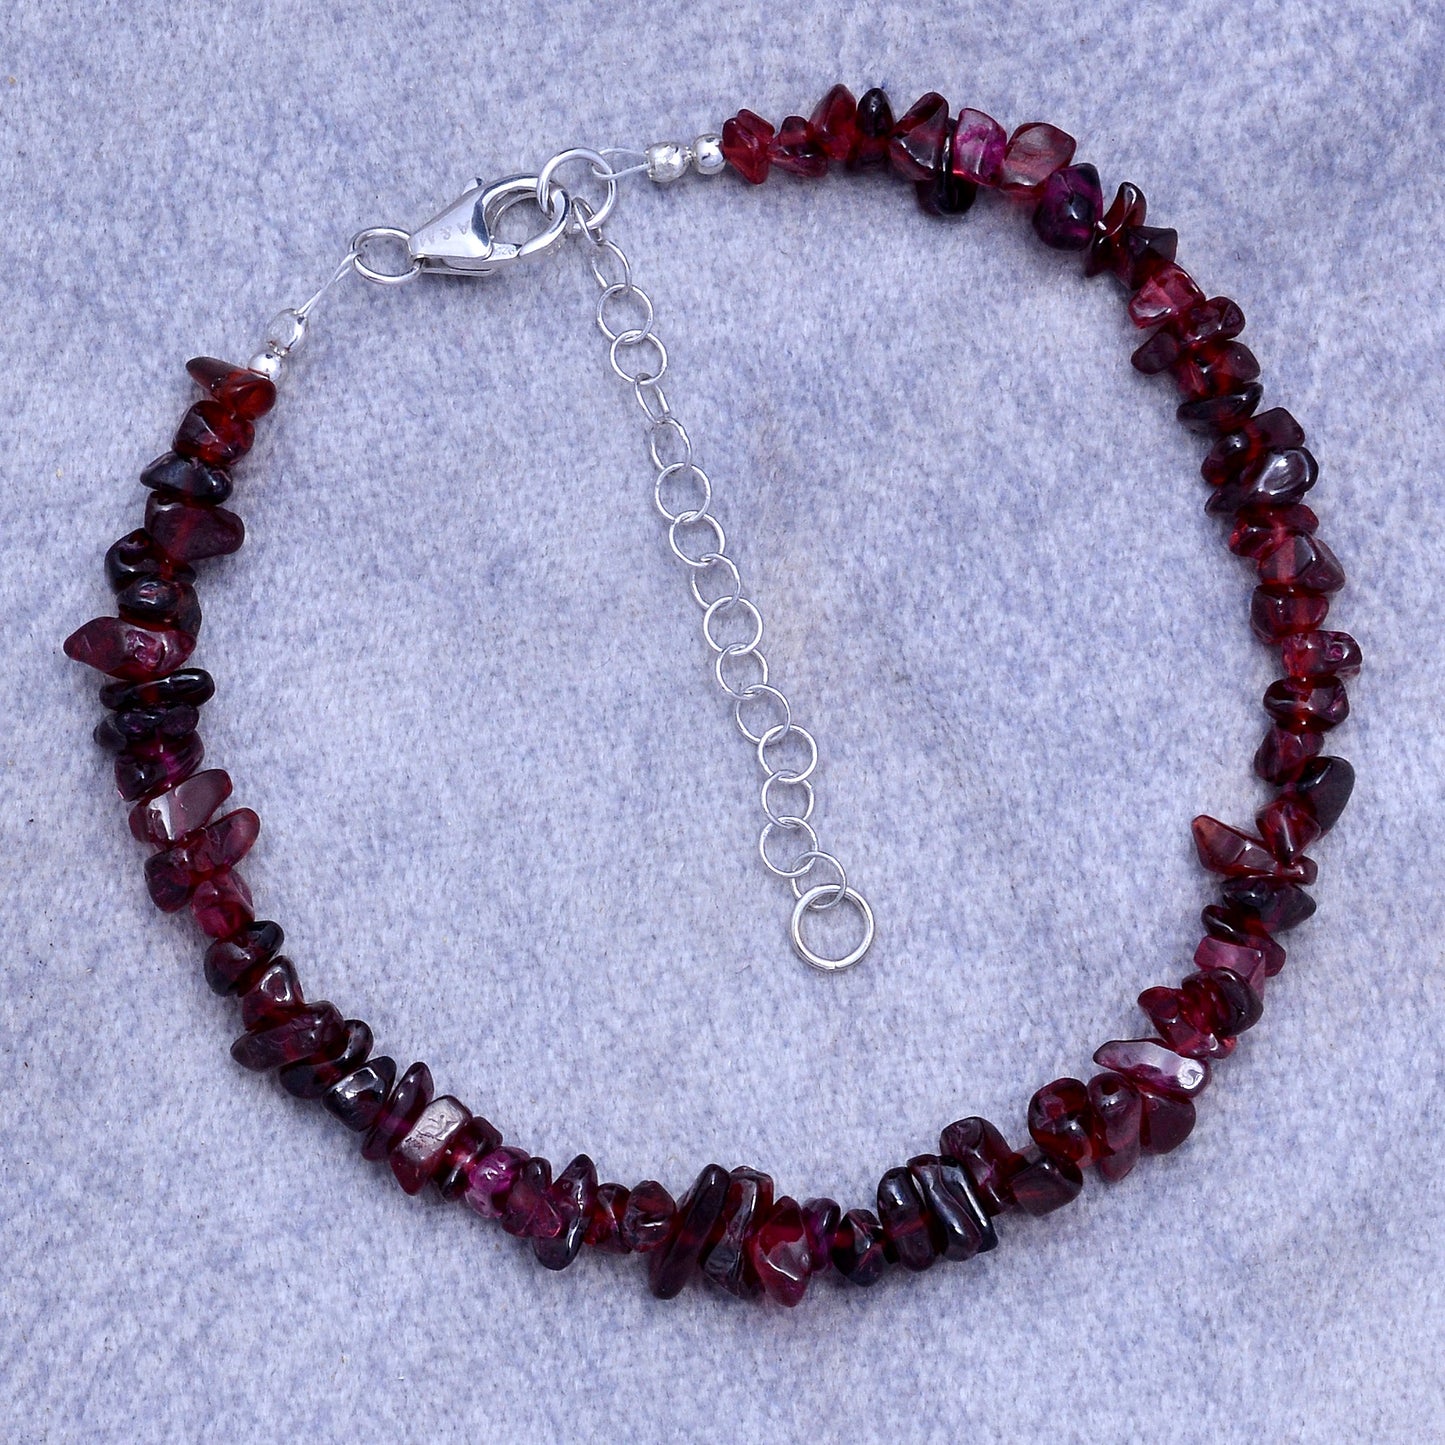 Natural Red Garnet Bracelet For women | Garnet Jewelry For Her GemsRush